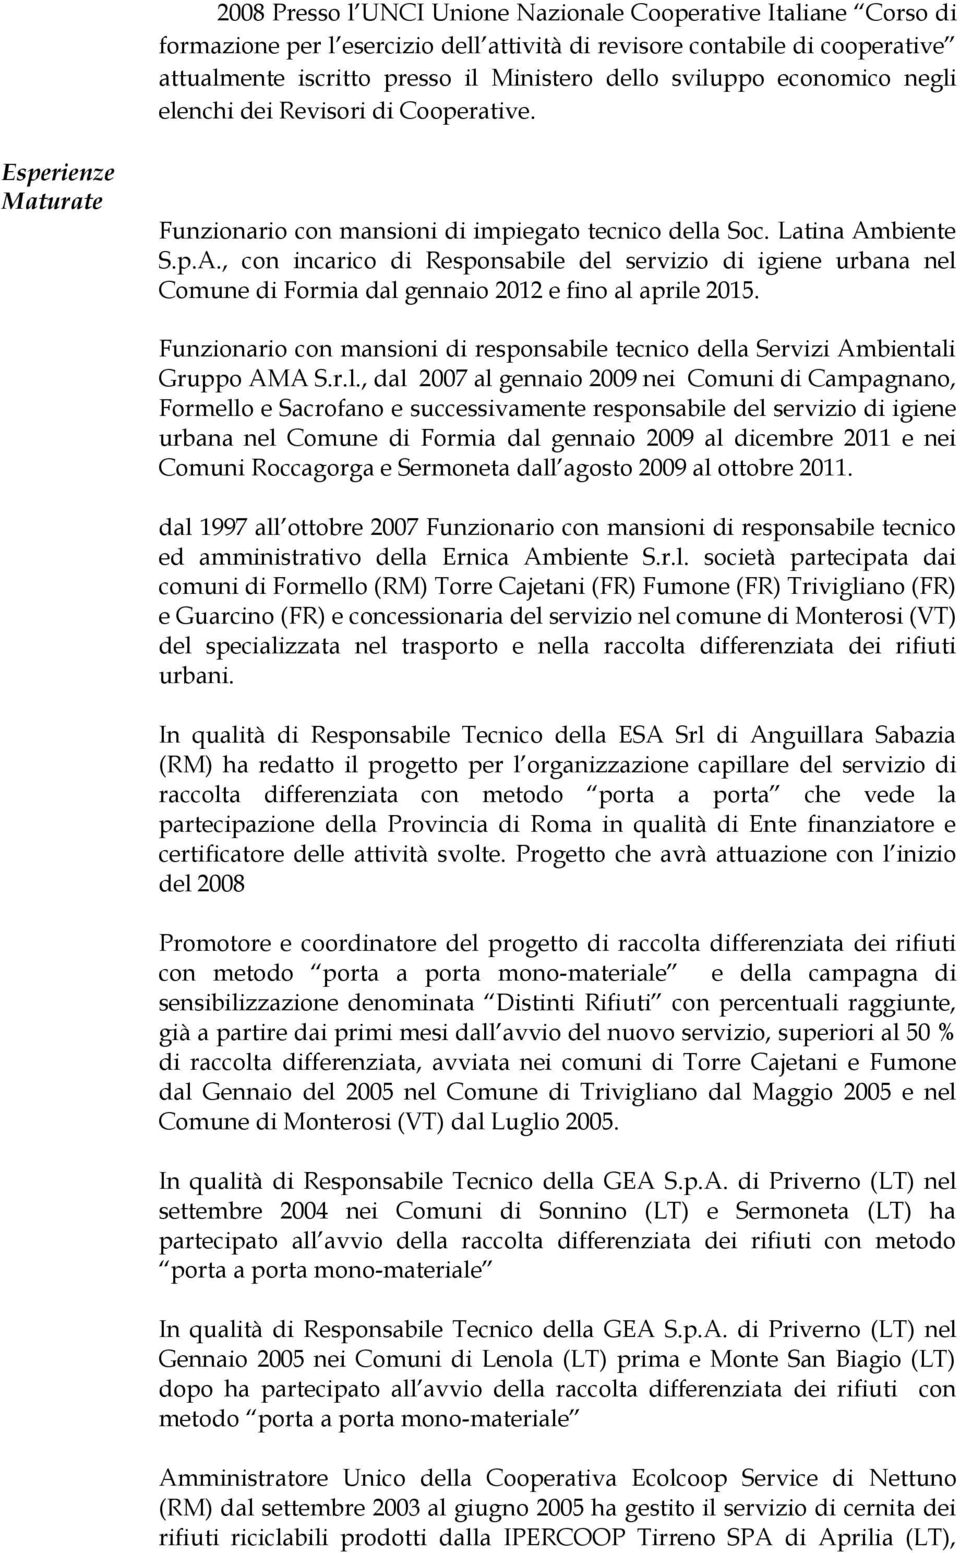 biente S.p.A., con incarico di Responsabile del servizio di igiene urbana nel Comune di Formia dal gennaio 2012 e fino al aprile 2015.